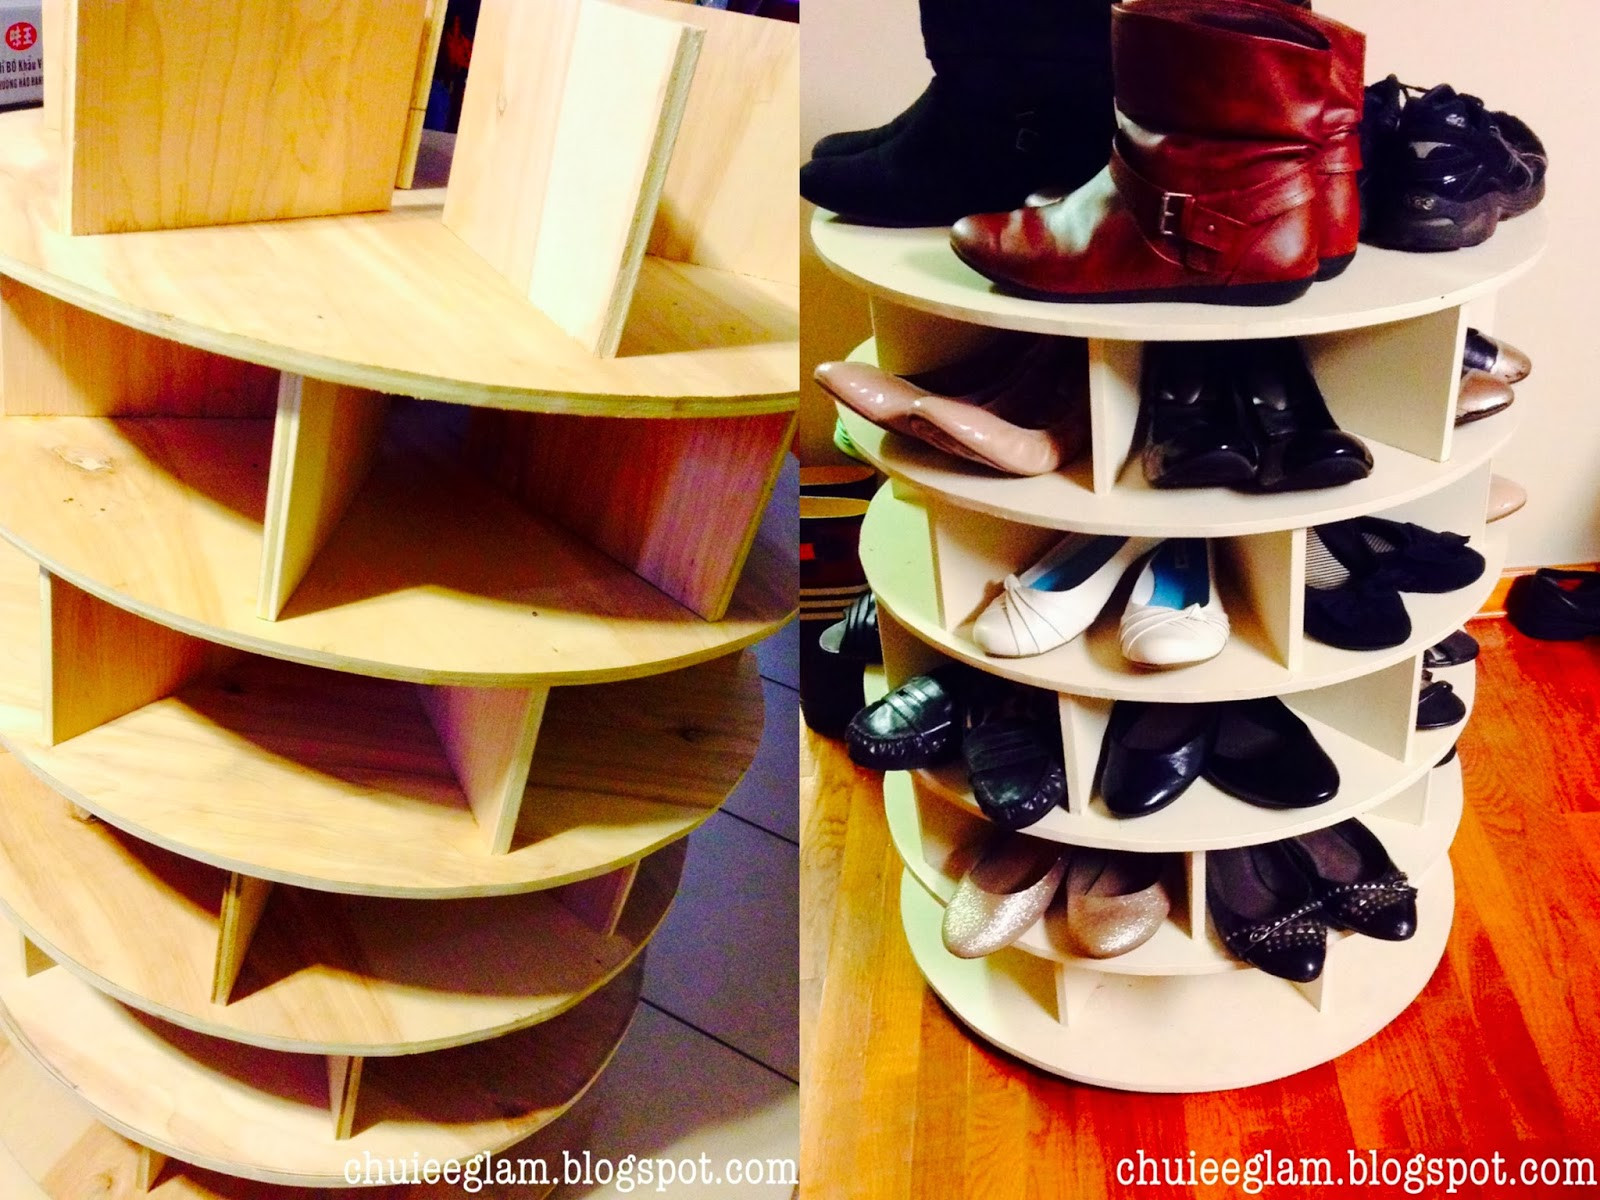 Best ideas about DIY Lazy Susan Shoe Rack
. Save or Pin DIY Lazy Susan Shoerack Organizer Chuiee Glam Now.